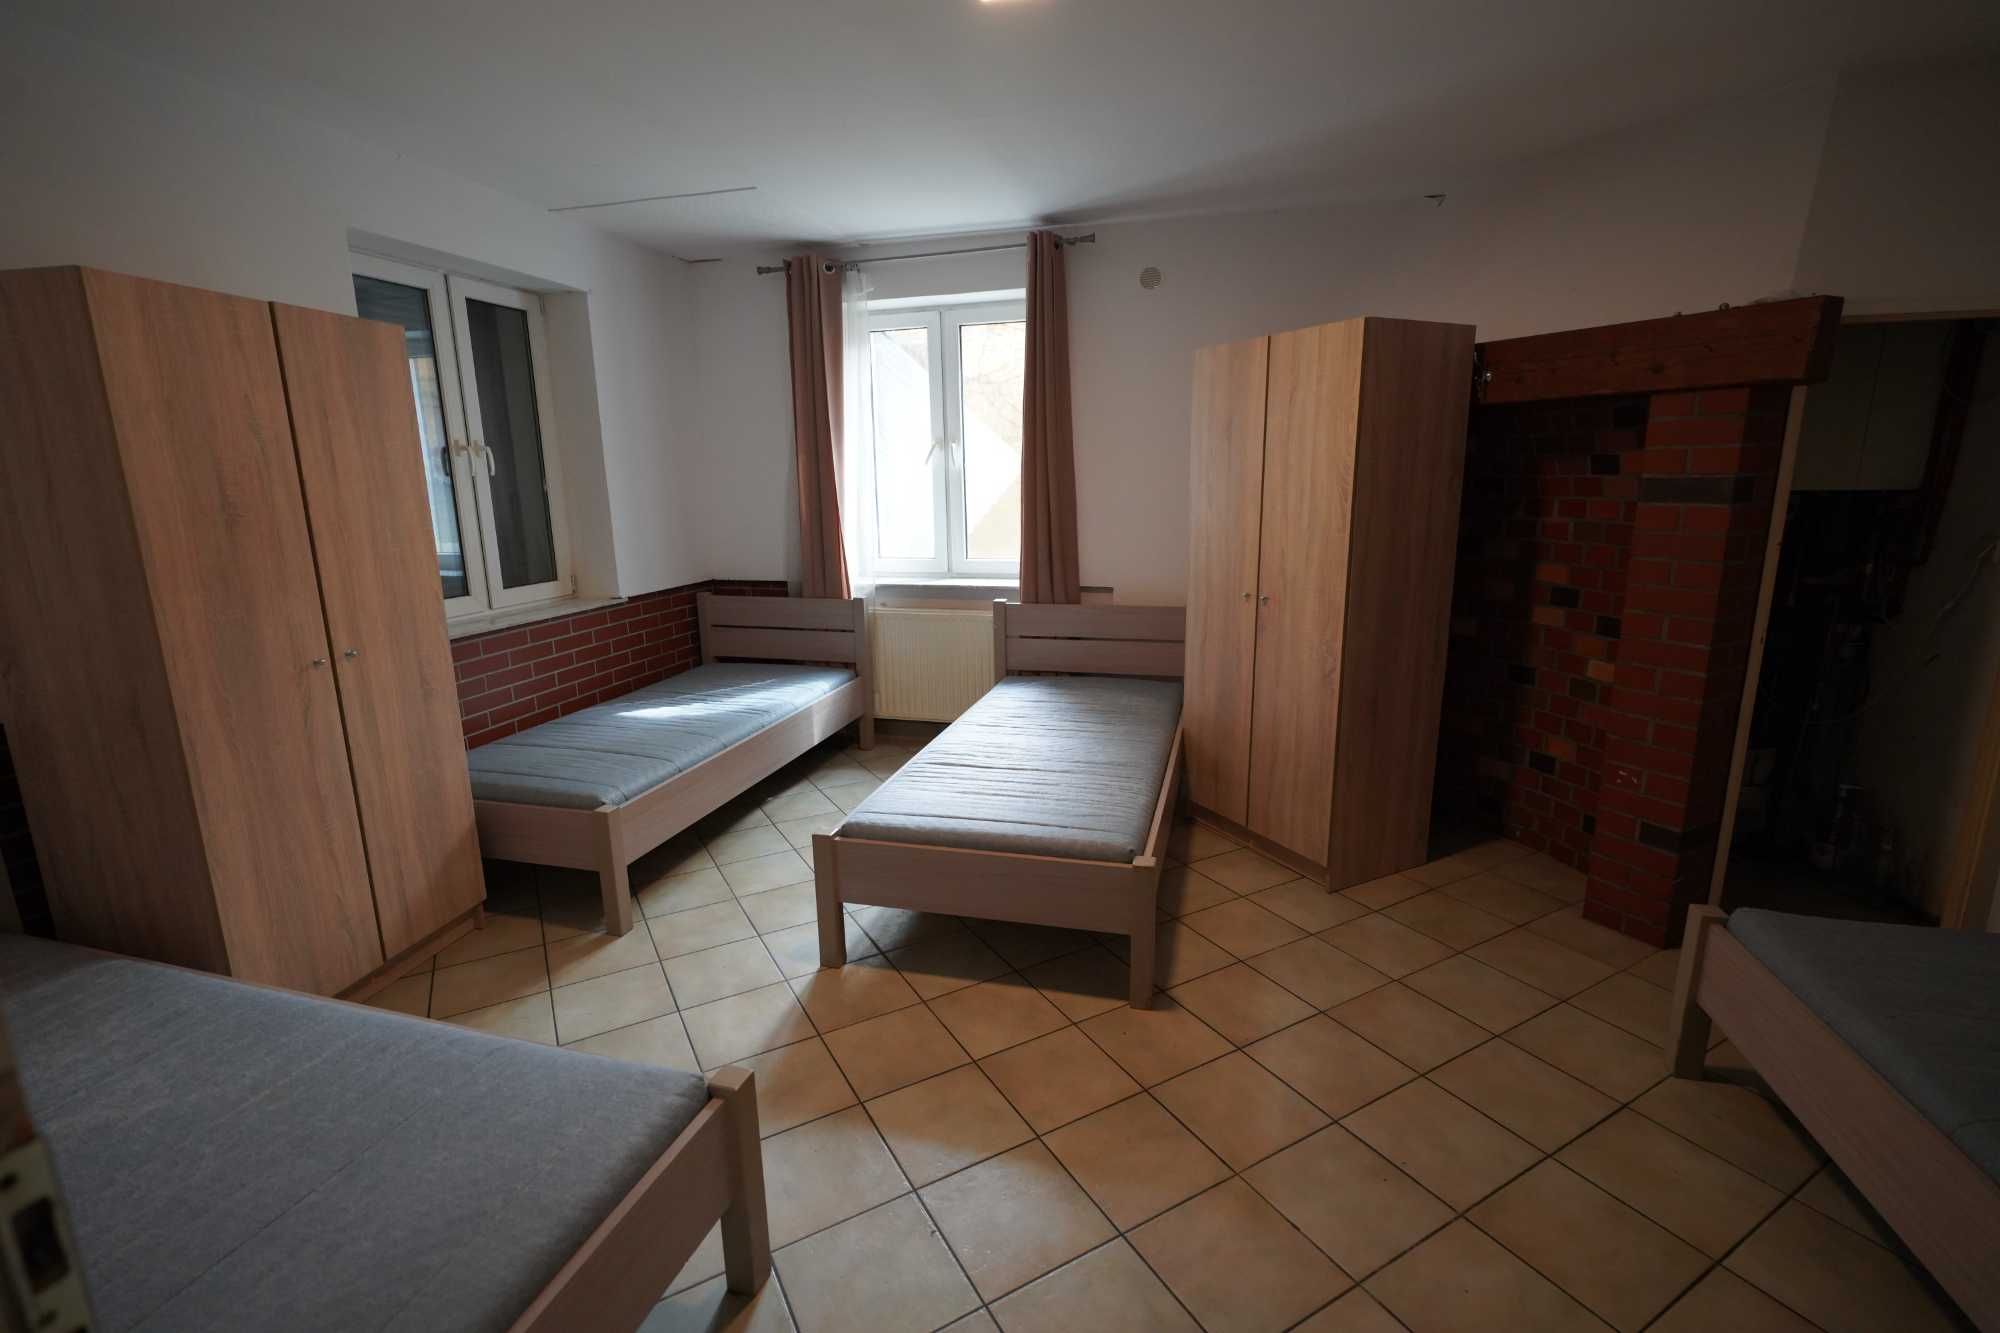 Komfortowy hostel - pokoje i miejsca w pokojach - ul. Słoneczna